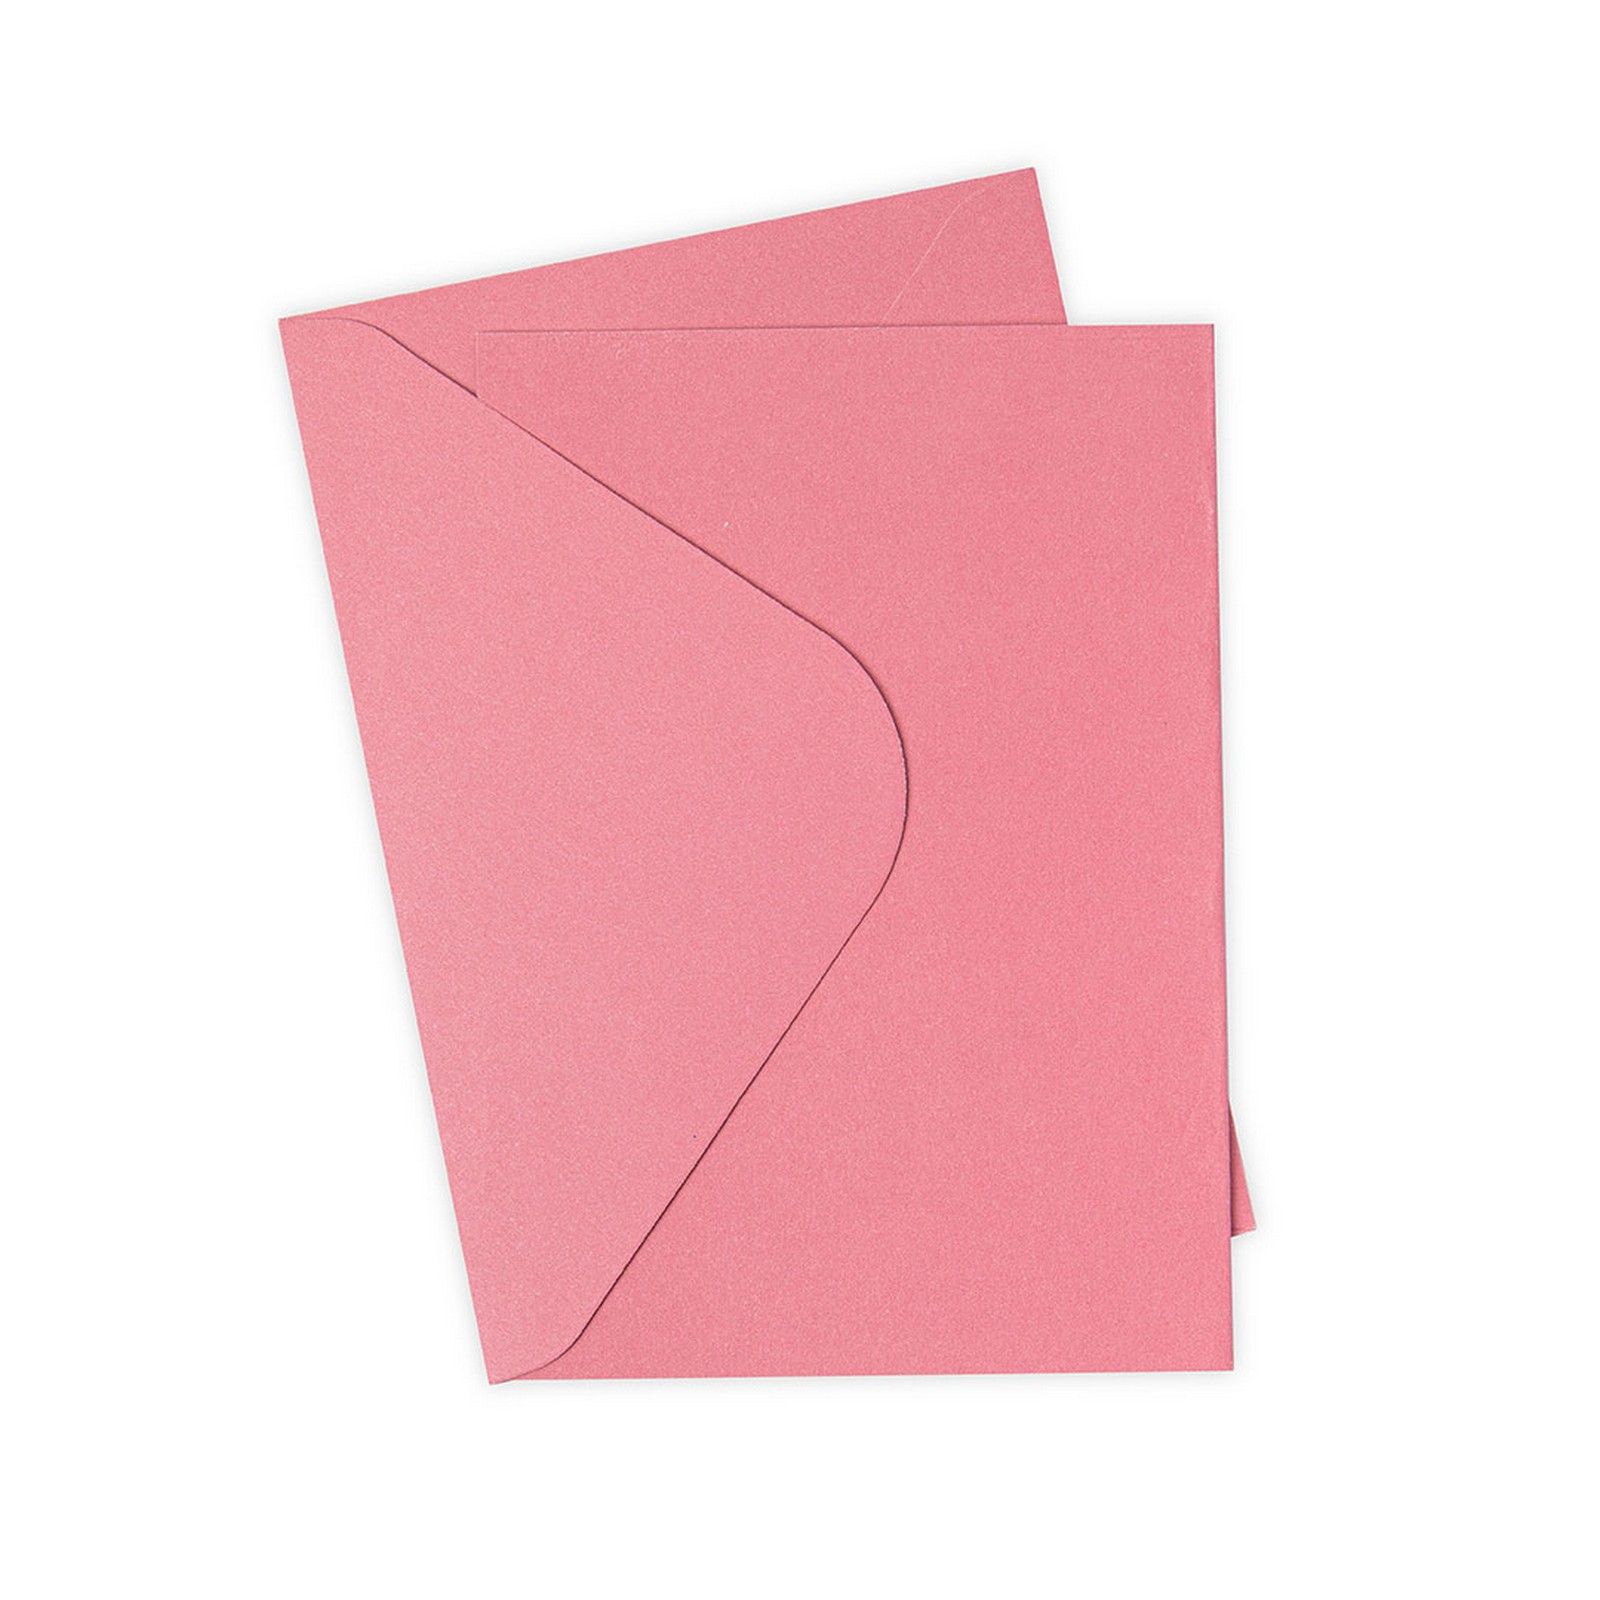 Sizzix • Lot de 10 cartes et enveloppes Surfacez Rose A6